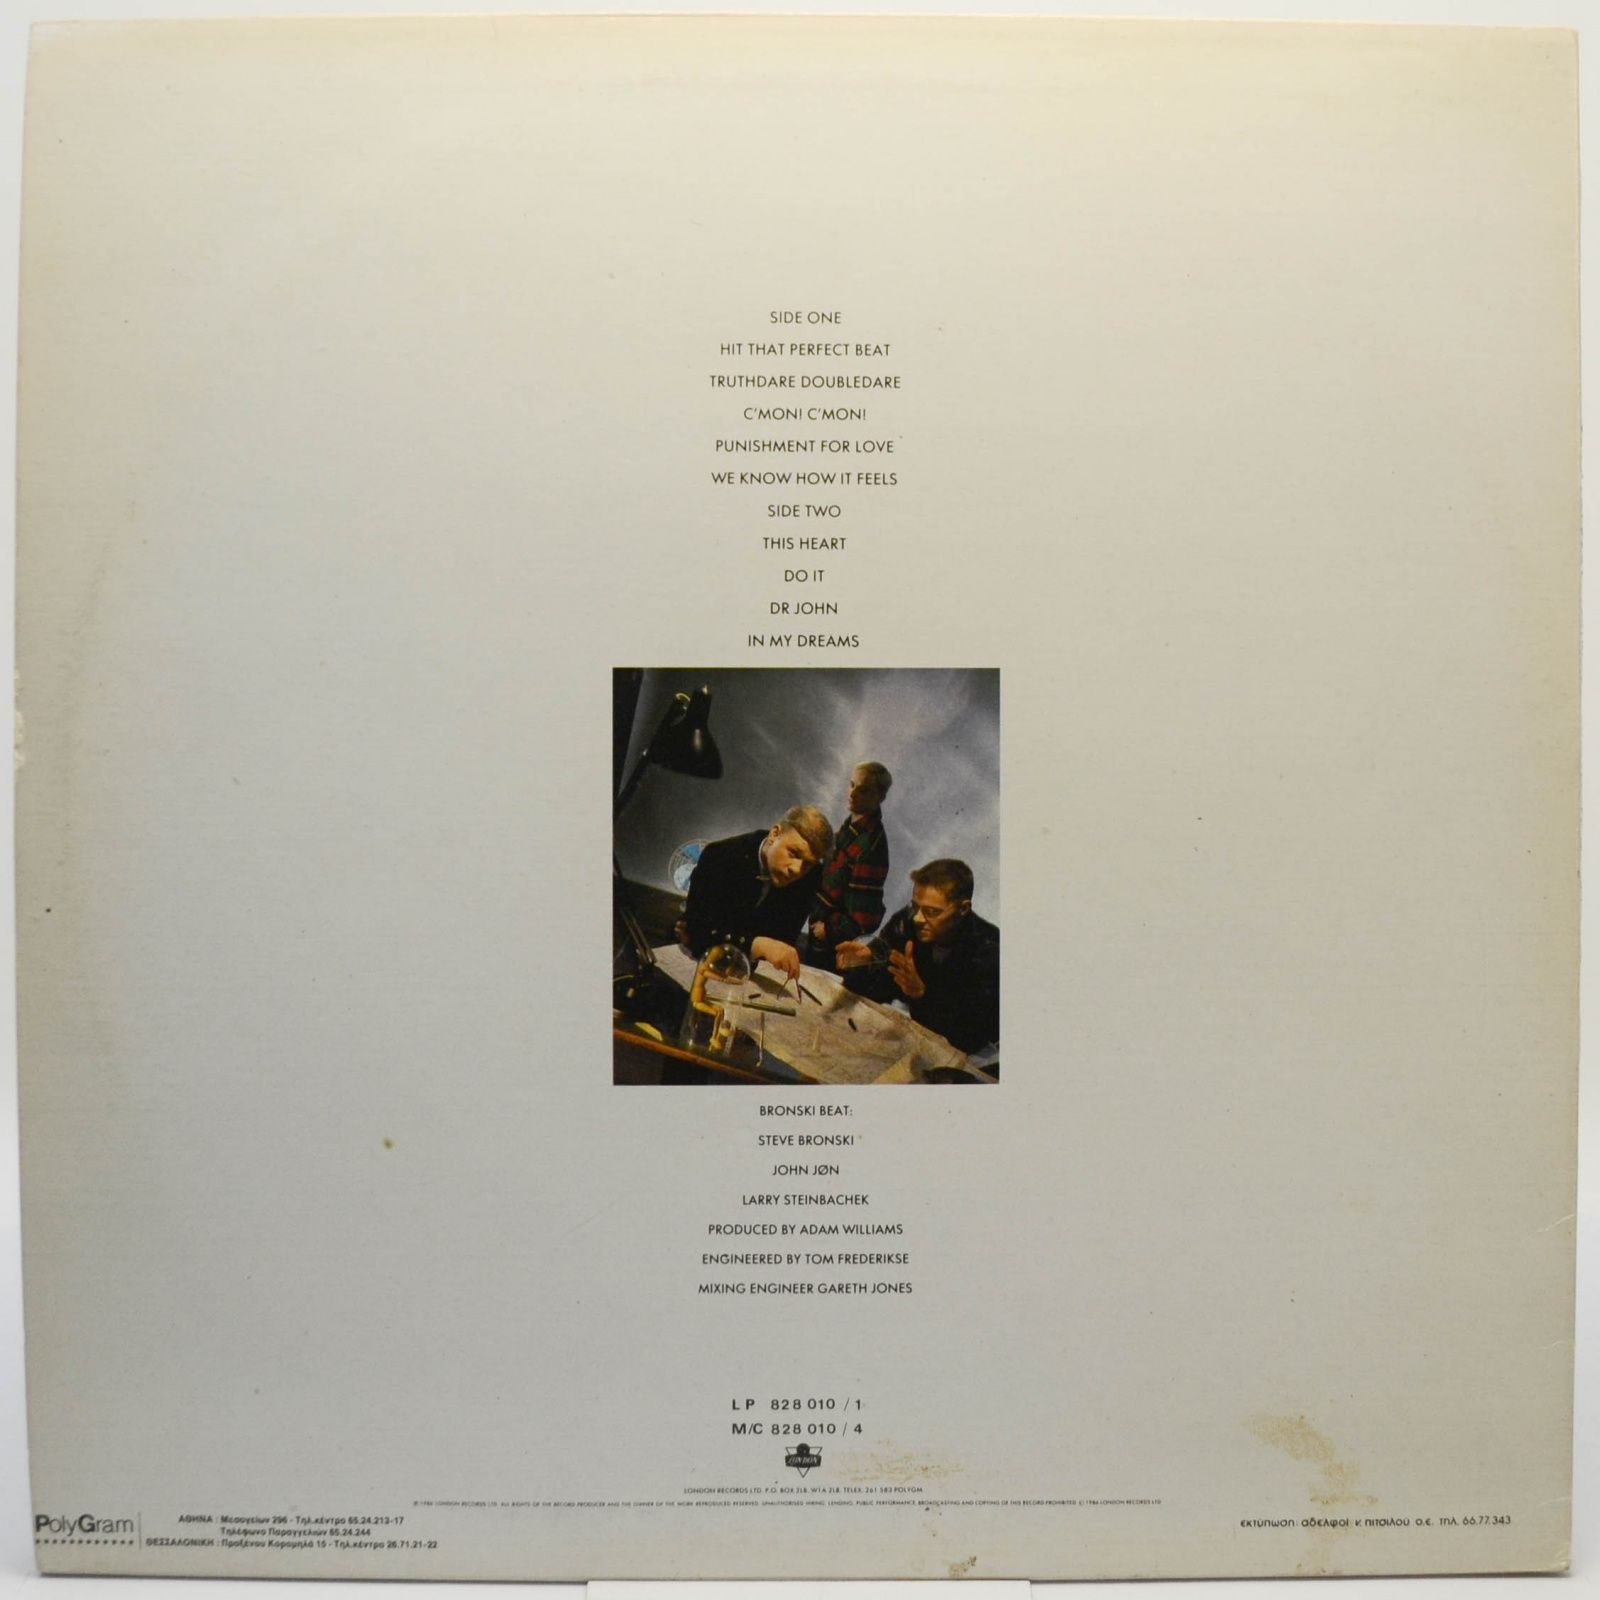 Bronski Beat — Truthdare Doubledare, 1986